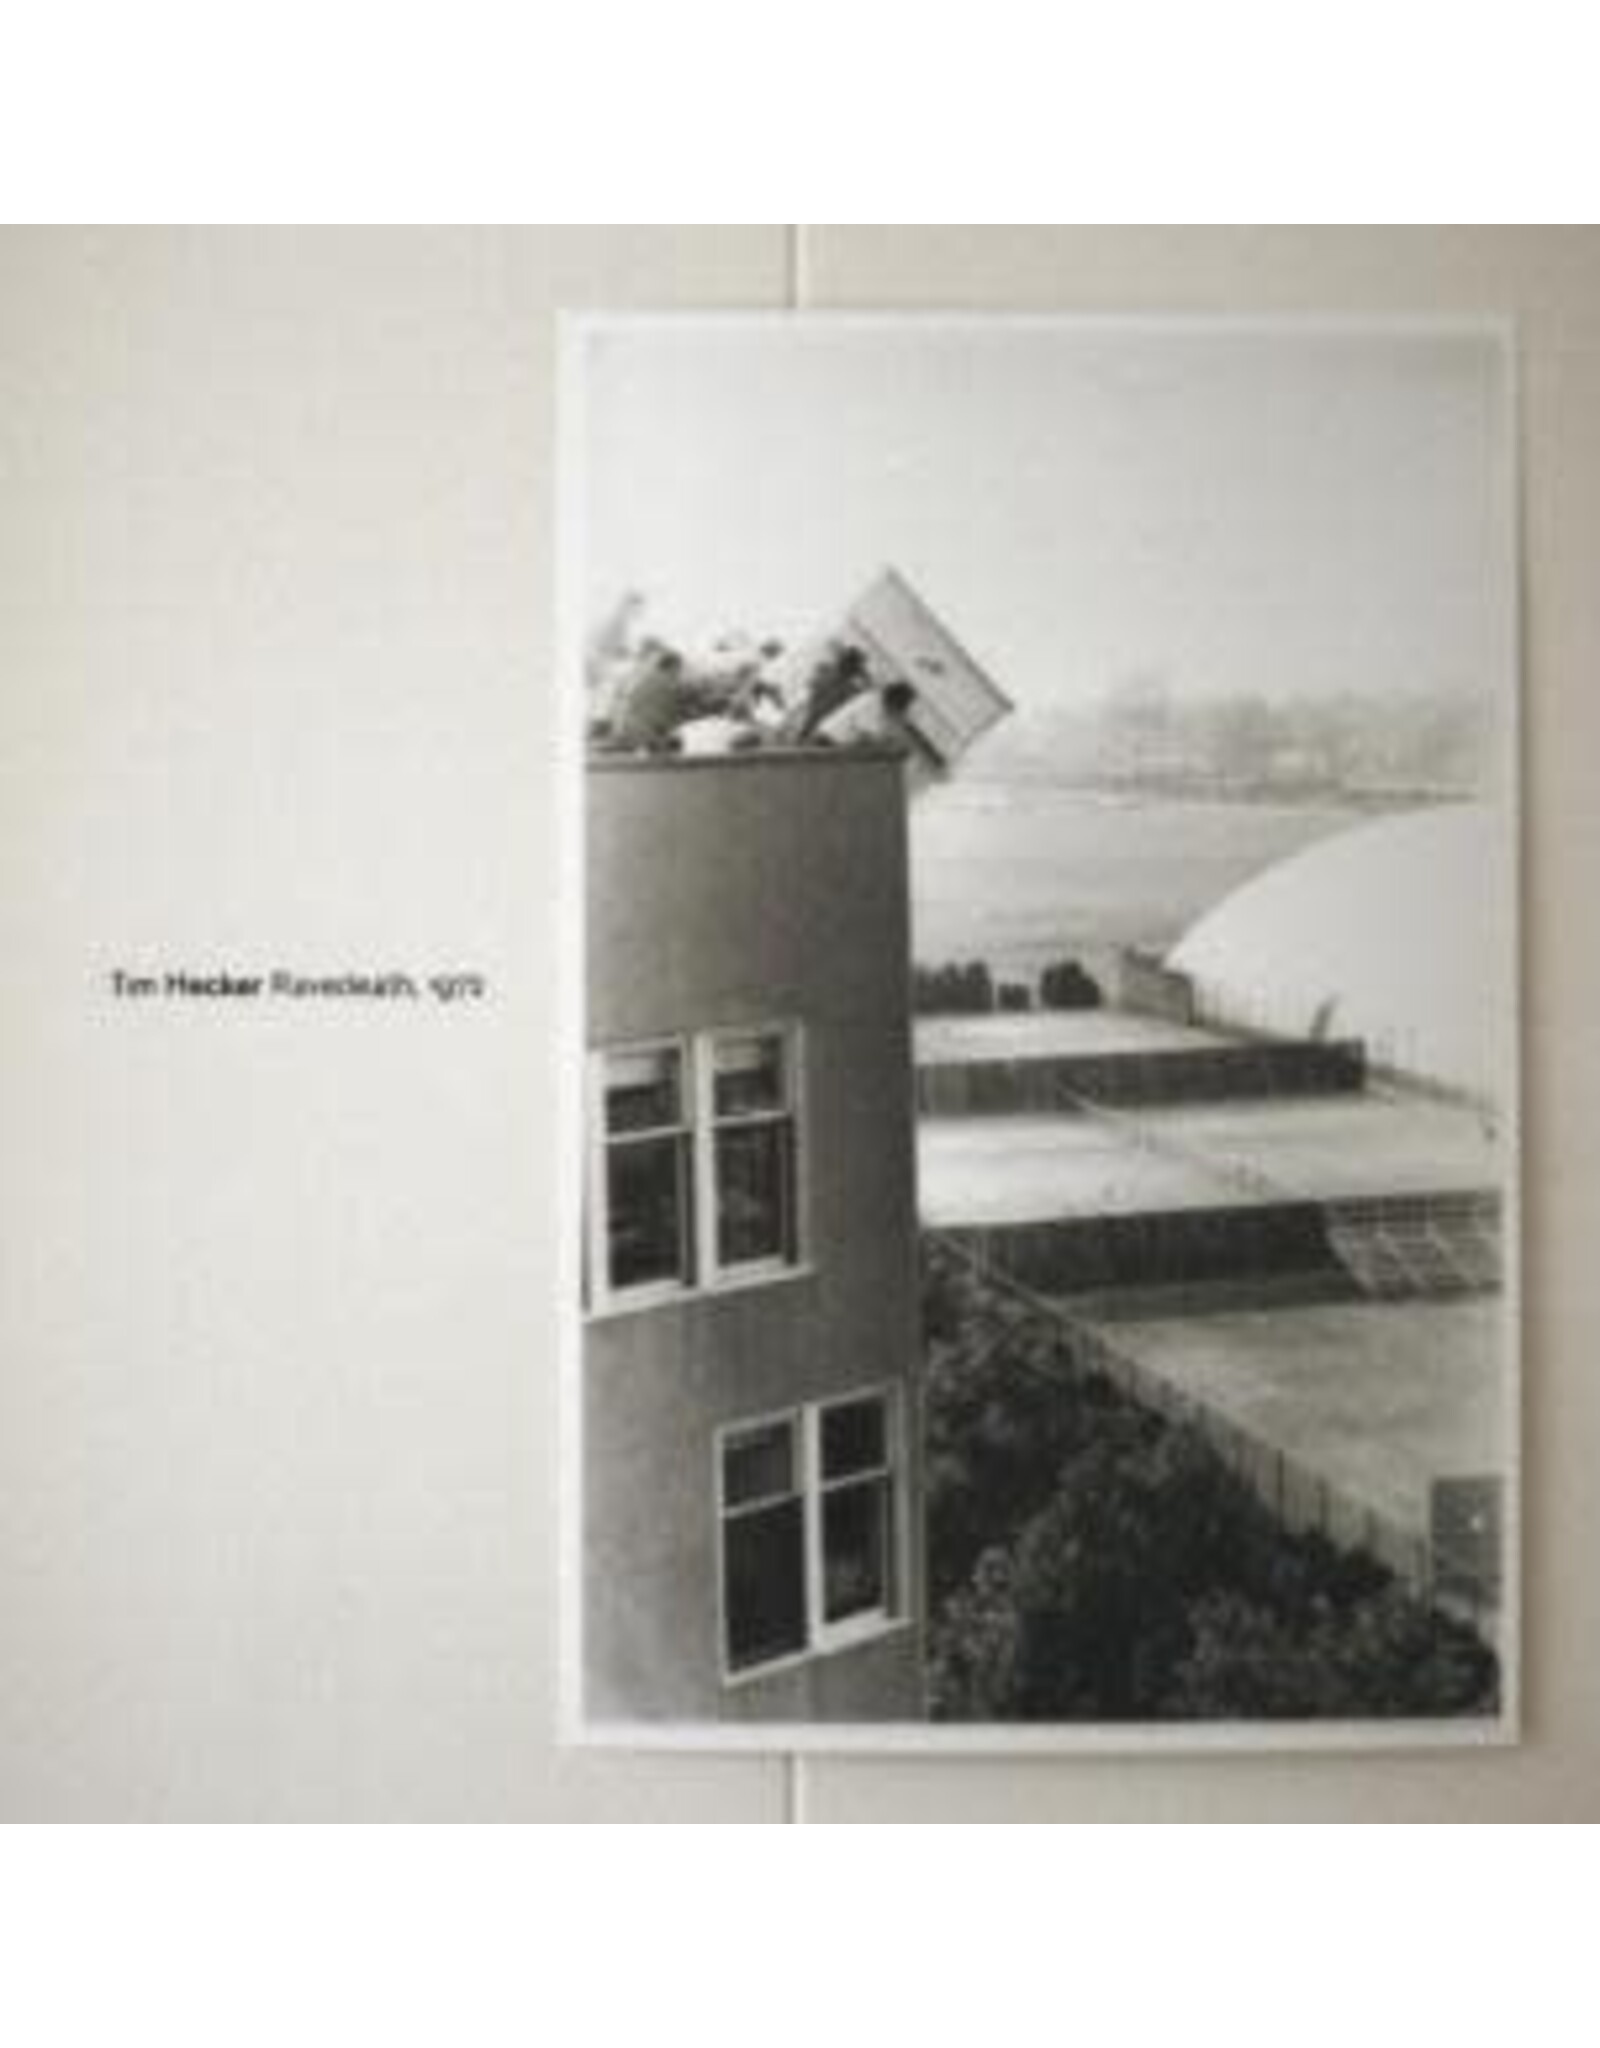 Kranky Hecker, Tim: Ravedeath 1972 LP